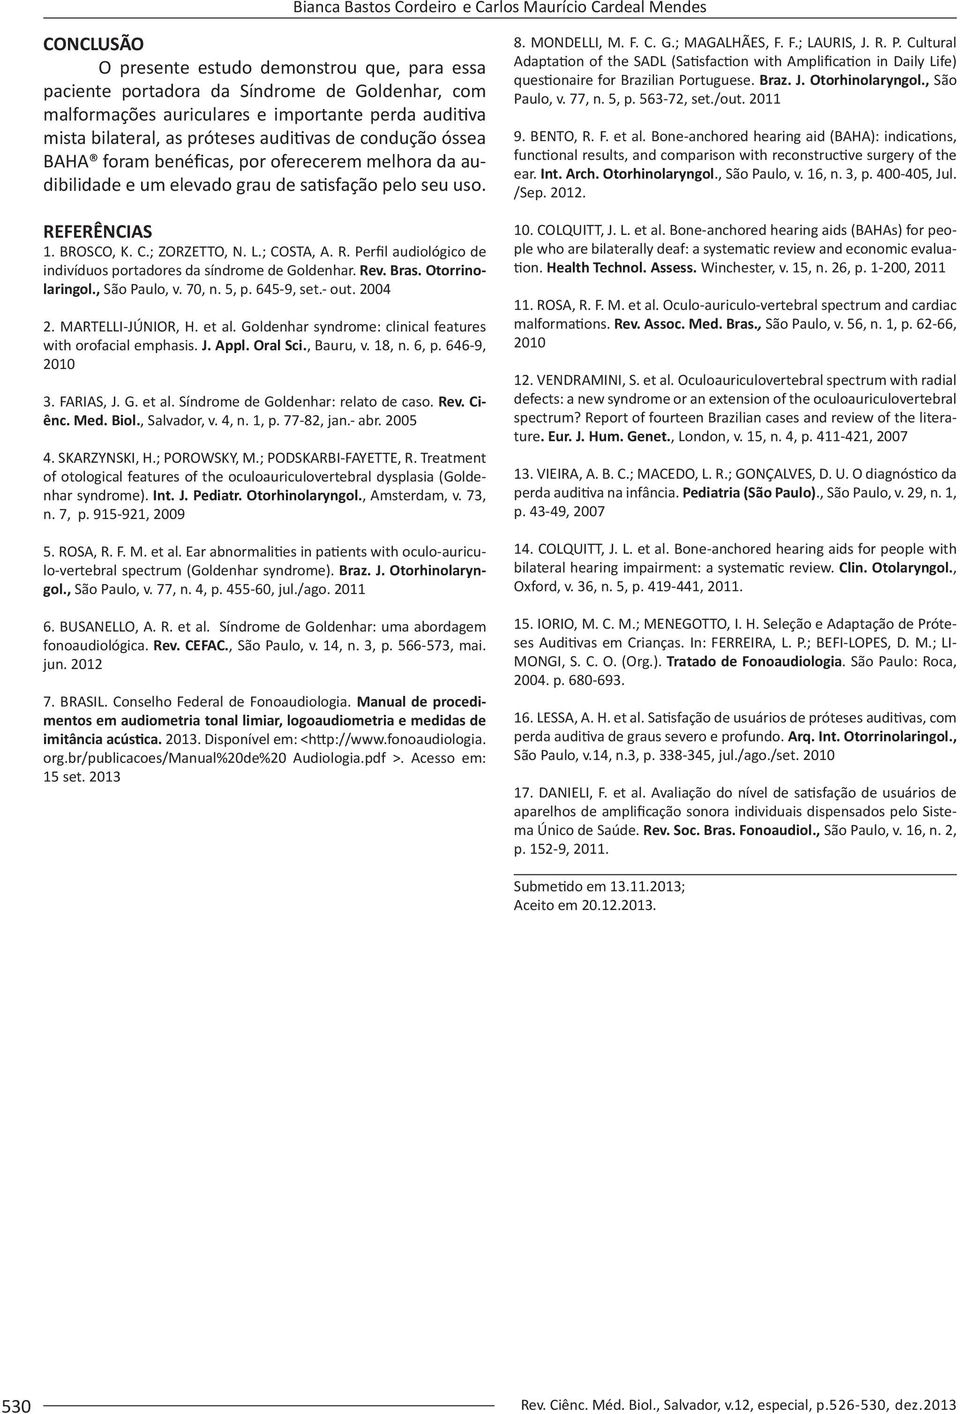 BROSCO, K. C.; ZORZETTO, N. L.; COSTA, A. R. Perfil audiológico de indivíduos portadores da síndrome de Goldenhar. Rev. Bras. Otorrinolaringol., São Paulo, v. 70, n. 5, p. 645-9, set.- out. 2004 2.